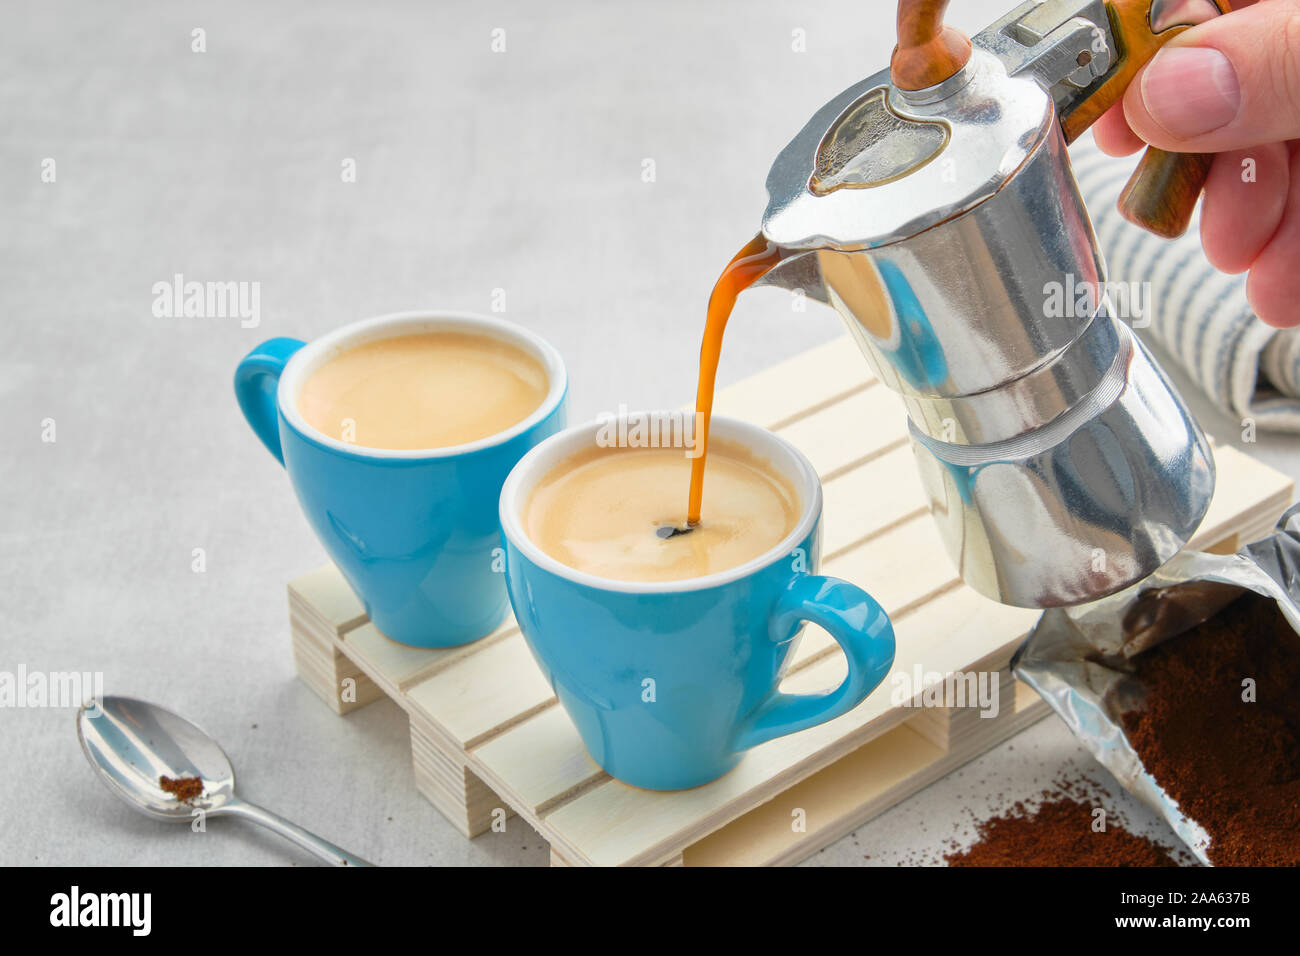 Kaffee gießen in Blau Becher von italienischen Kaffee Espressomaschine. Zwei Kaffeetassen und Espressokocher. Stockfoto